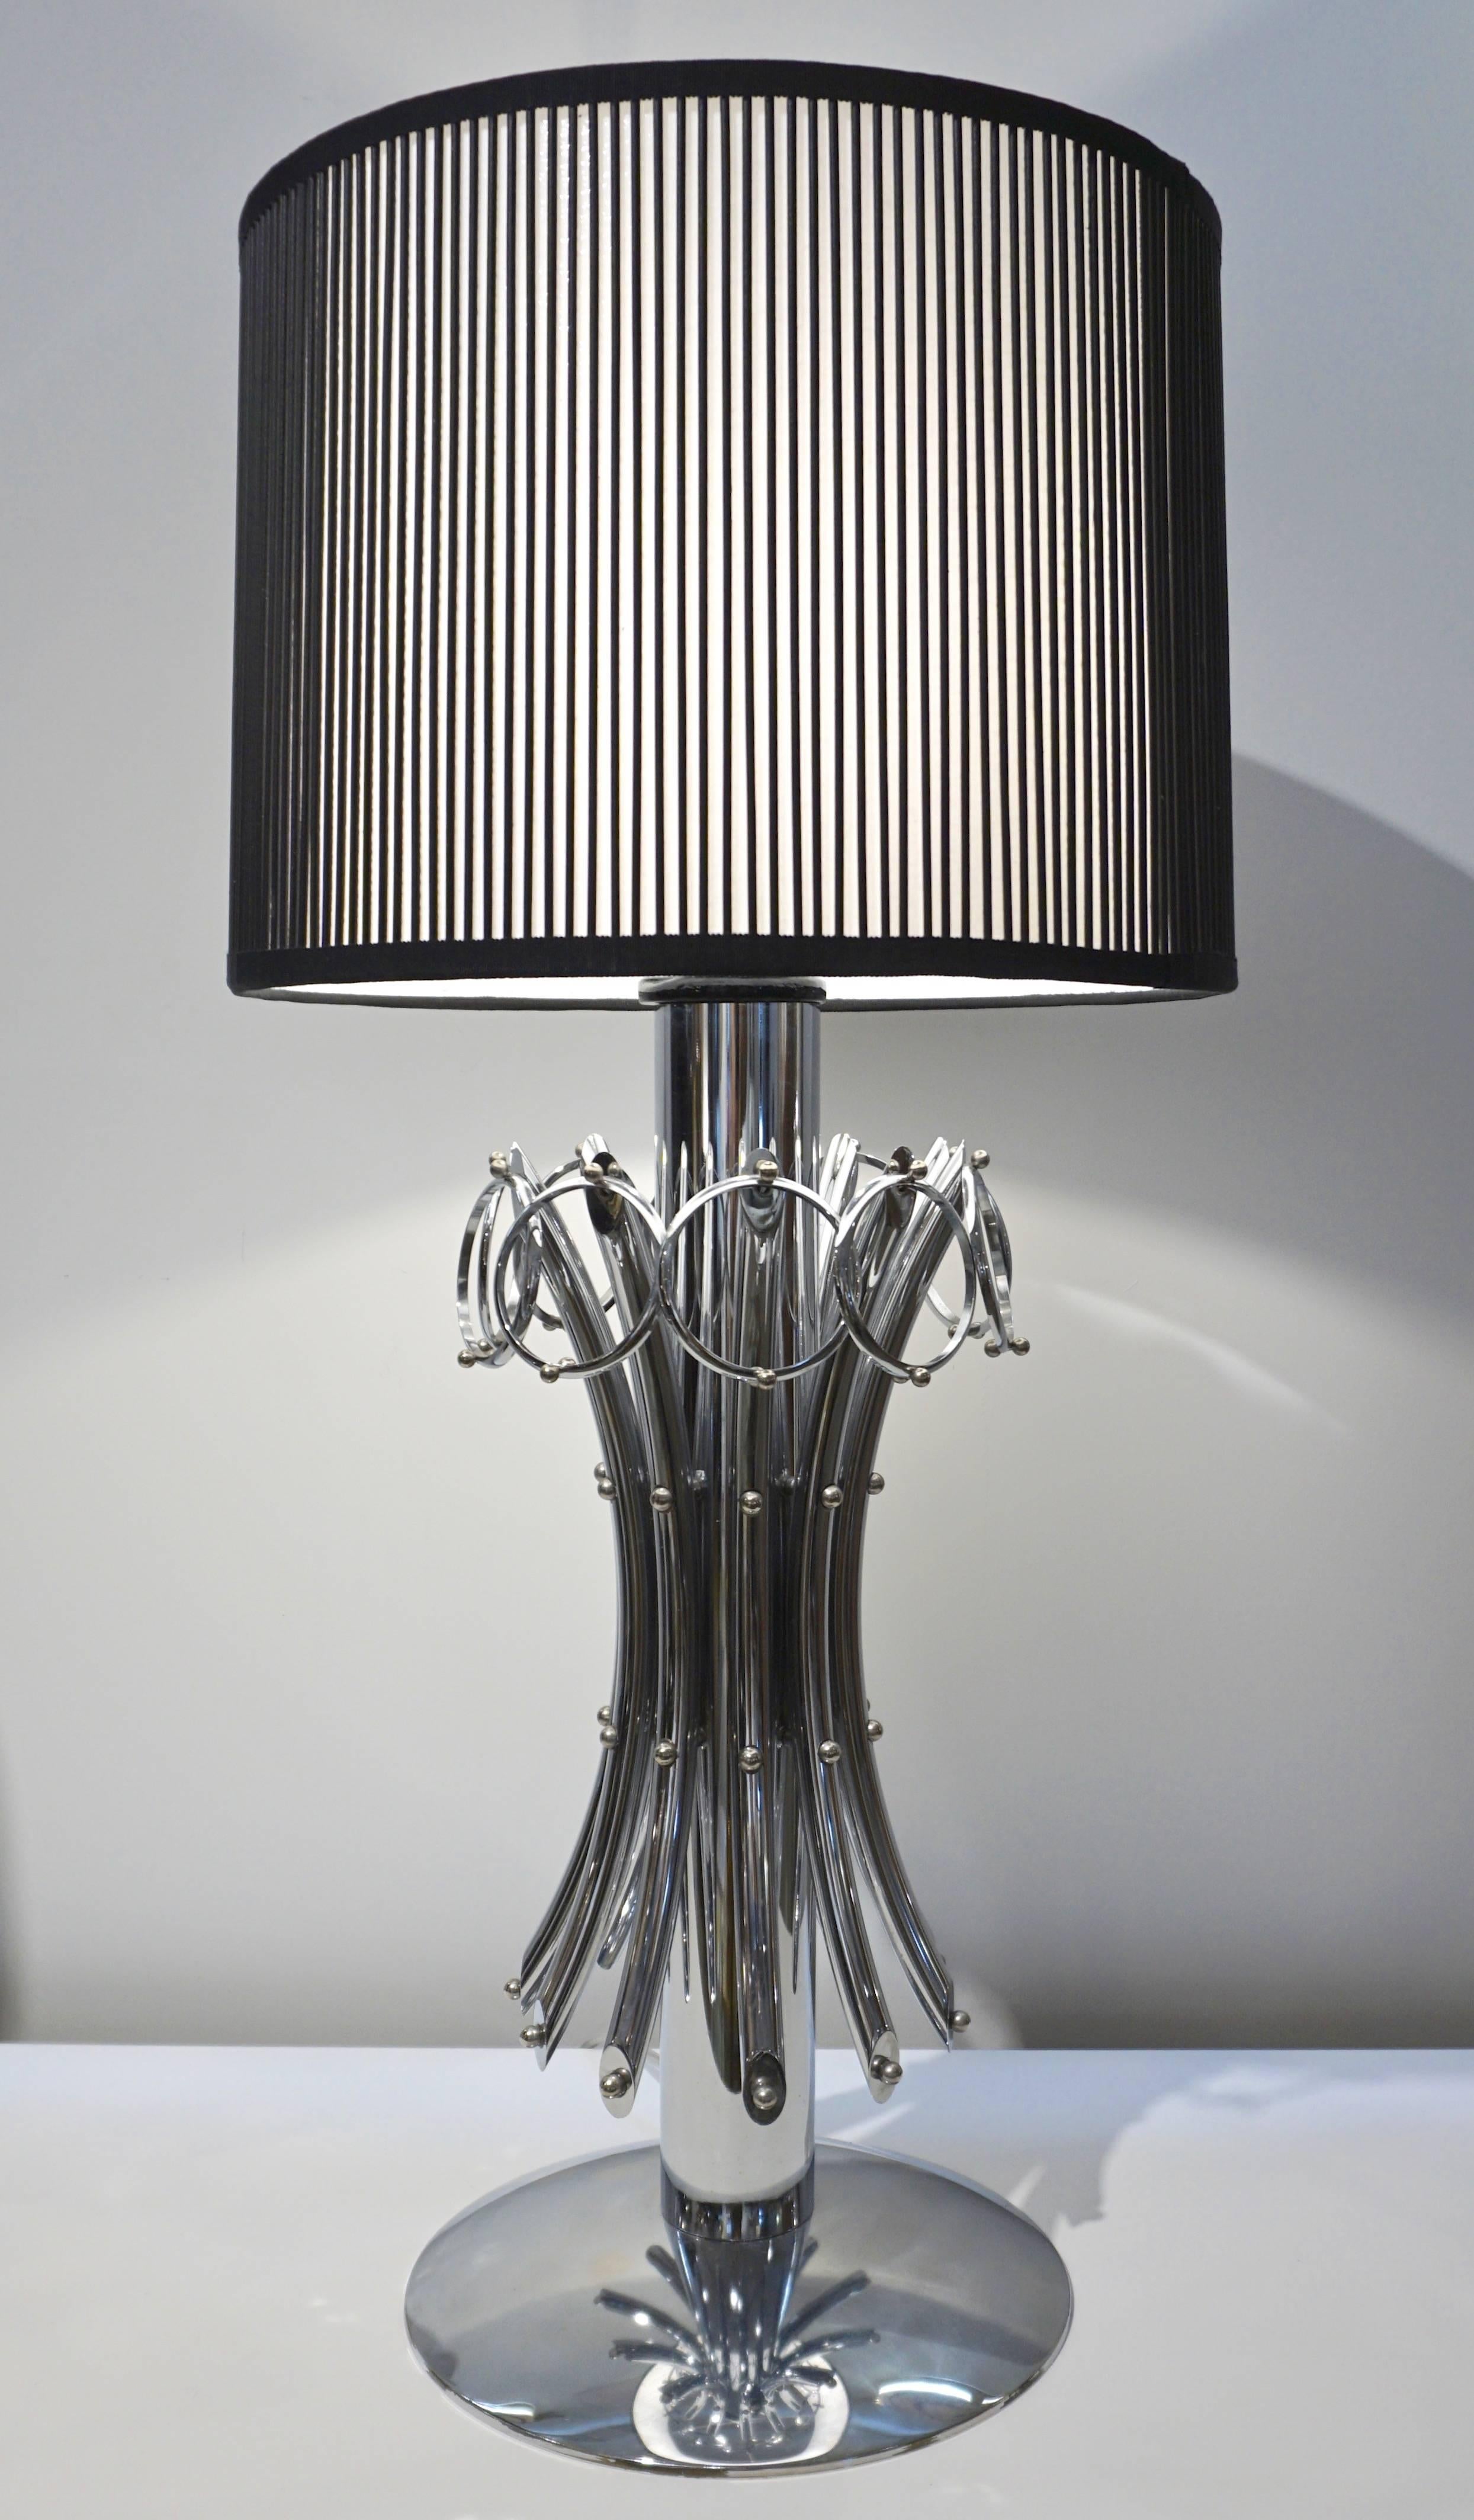 1970s-Lampen – im Viererset erhältlich Diese seltenen italienischen Vintage-Lampen in ausgezeichnetem Zustand sind ein Statement. Das organische Design ist äußerst interessant: Ausladende bogenförmige Stäbe sind mit hängenden Kreisen verziert und um